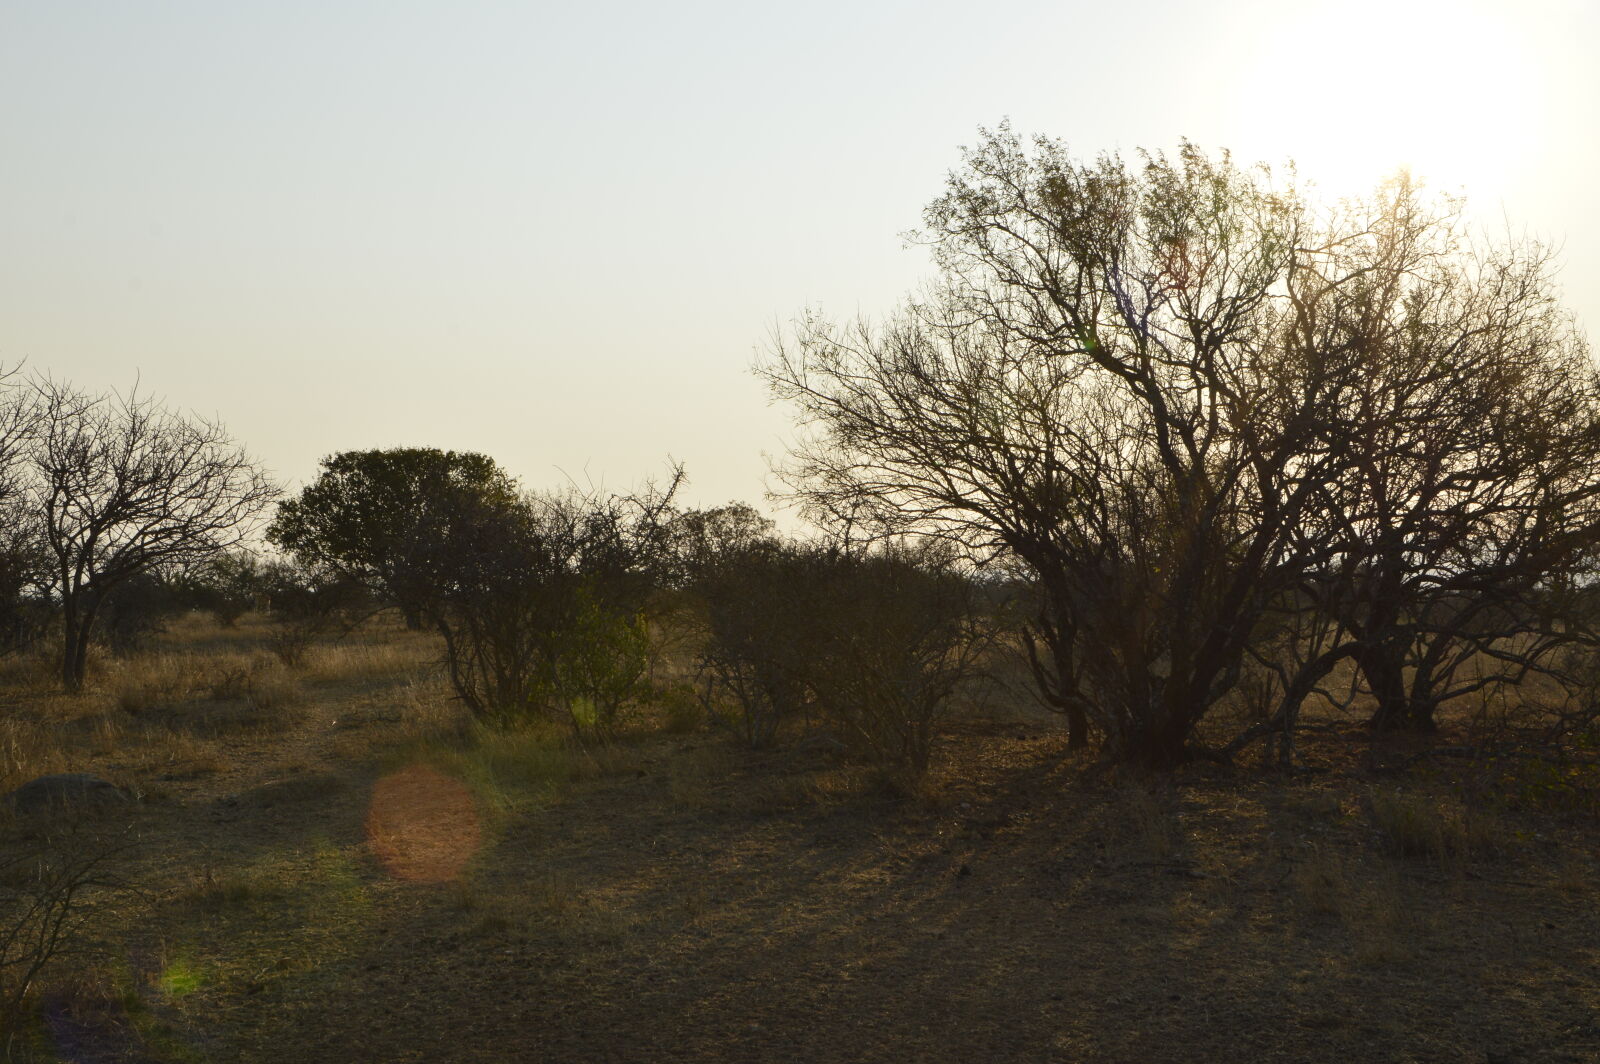 Nikon D3200 + Sigma 18-250mm F3.5-6.3 DC OS HSM sample photo. Bush, bushveld, evening, sun photography